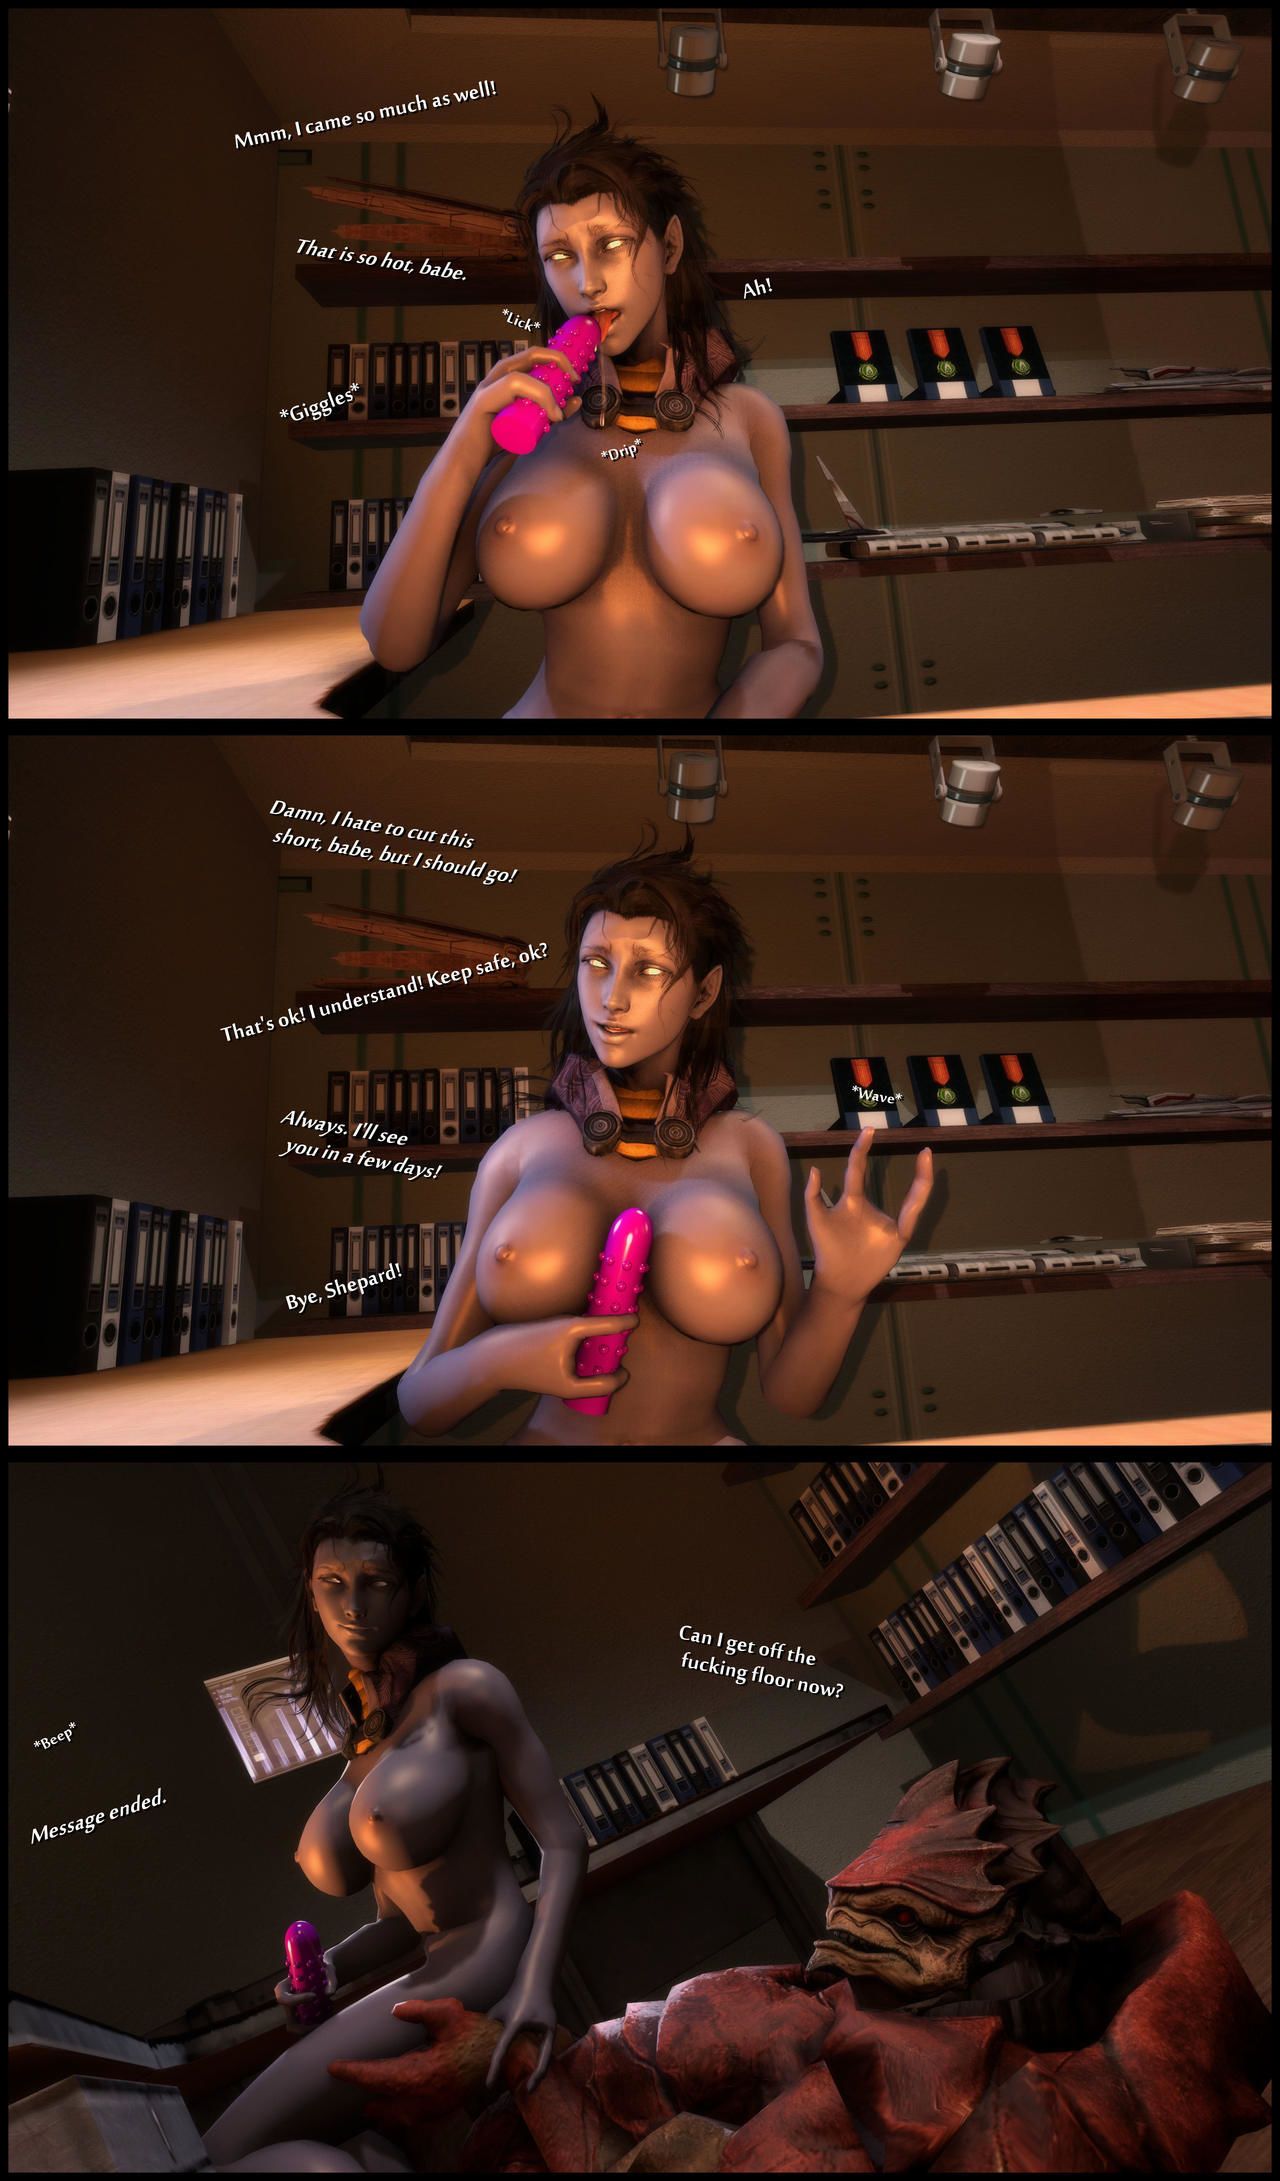 Mass Effect 3 Sex - foab30] Size Queen (Mass Effect) - part 3 at 3d Sex Pics